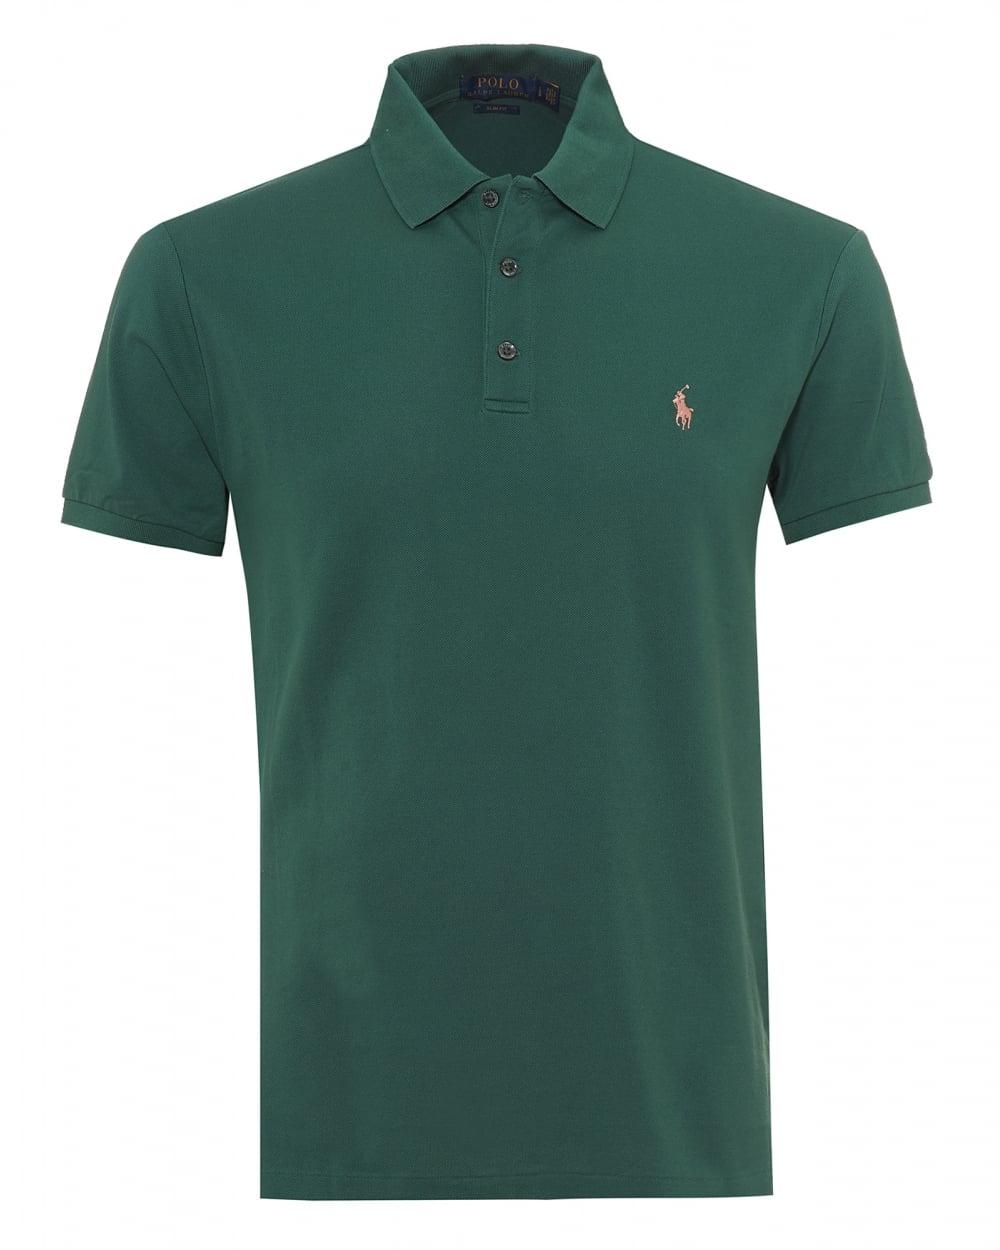 Green Polo Logo - Ralph Lauren Mens Mesh Polo Shirt, Embroidered Logo Green Polo